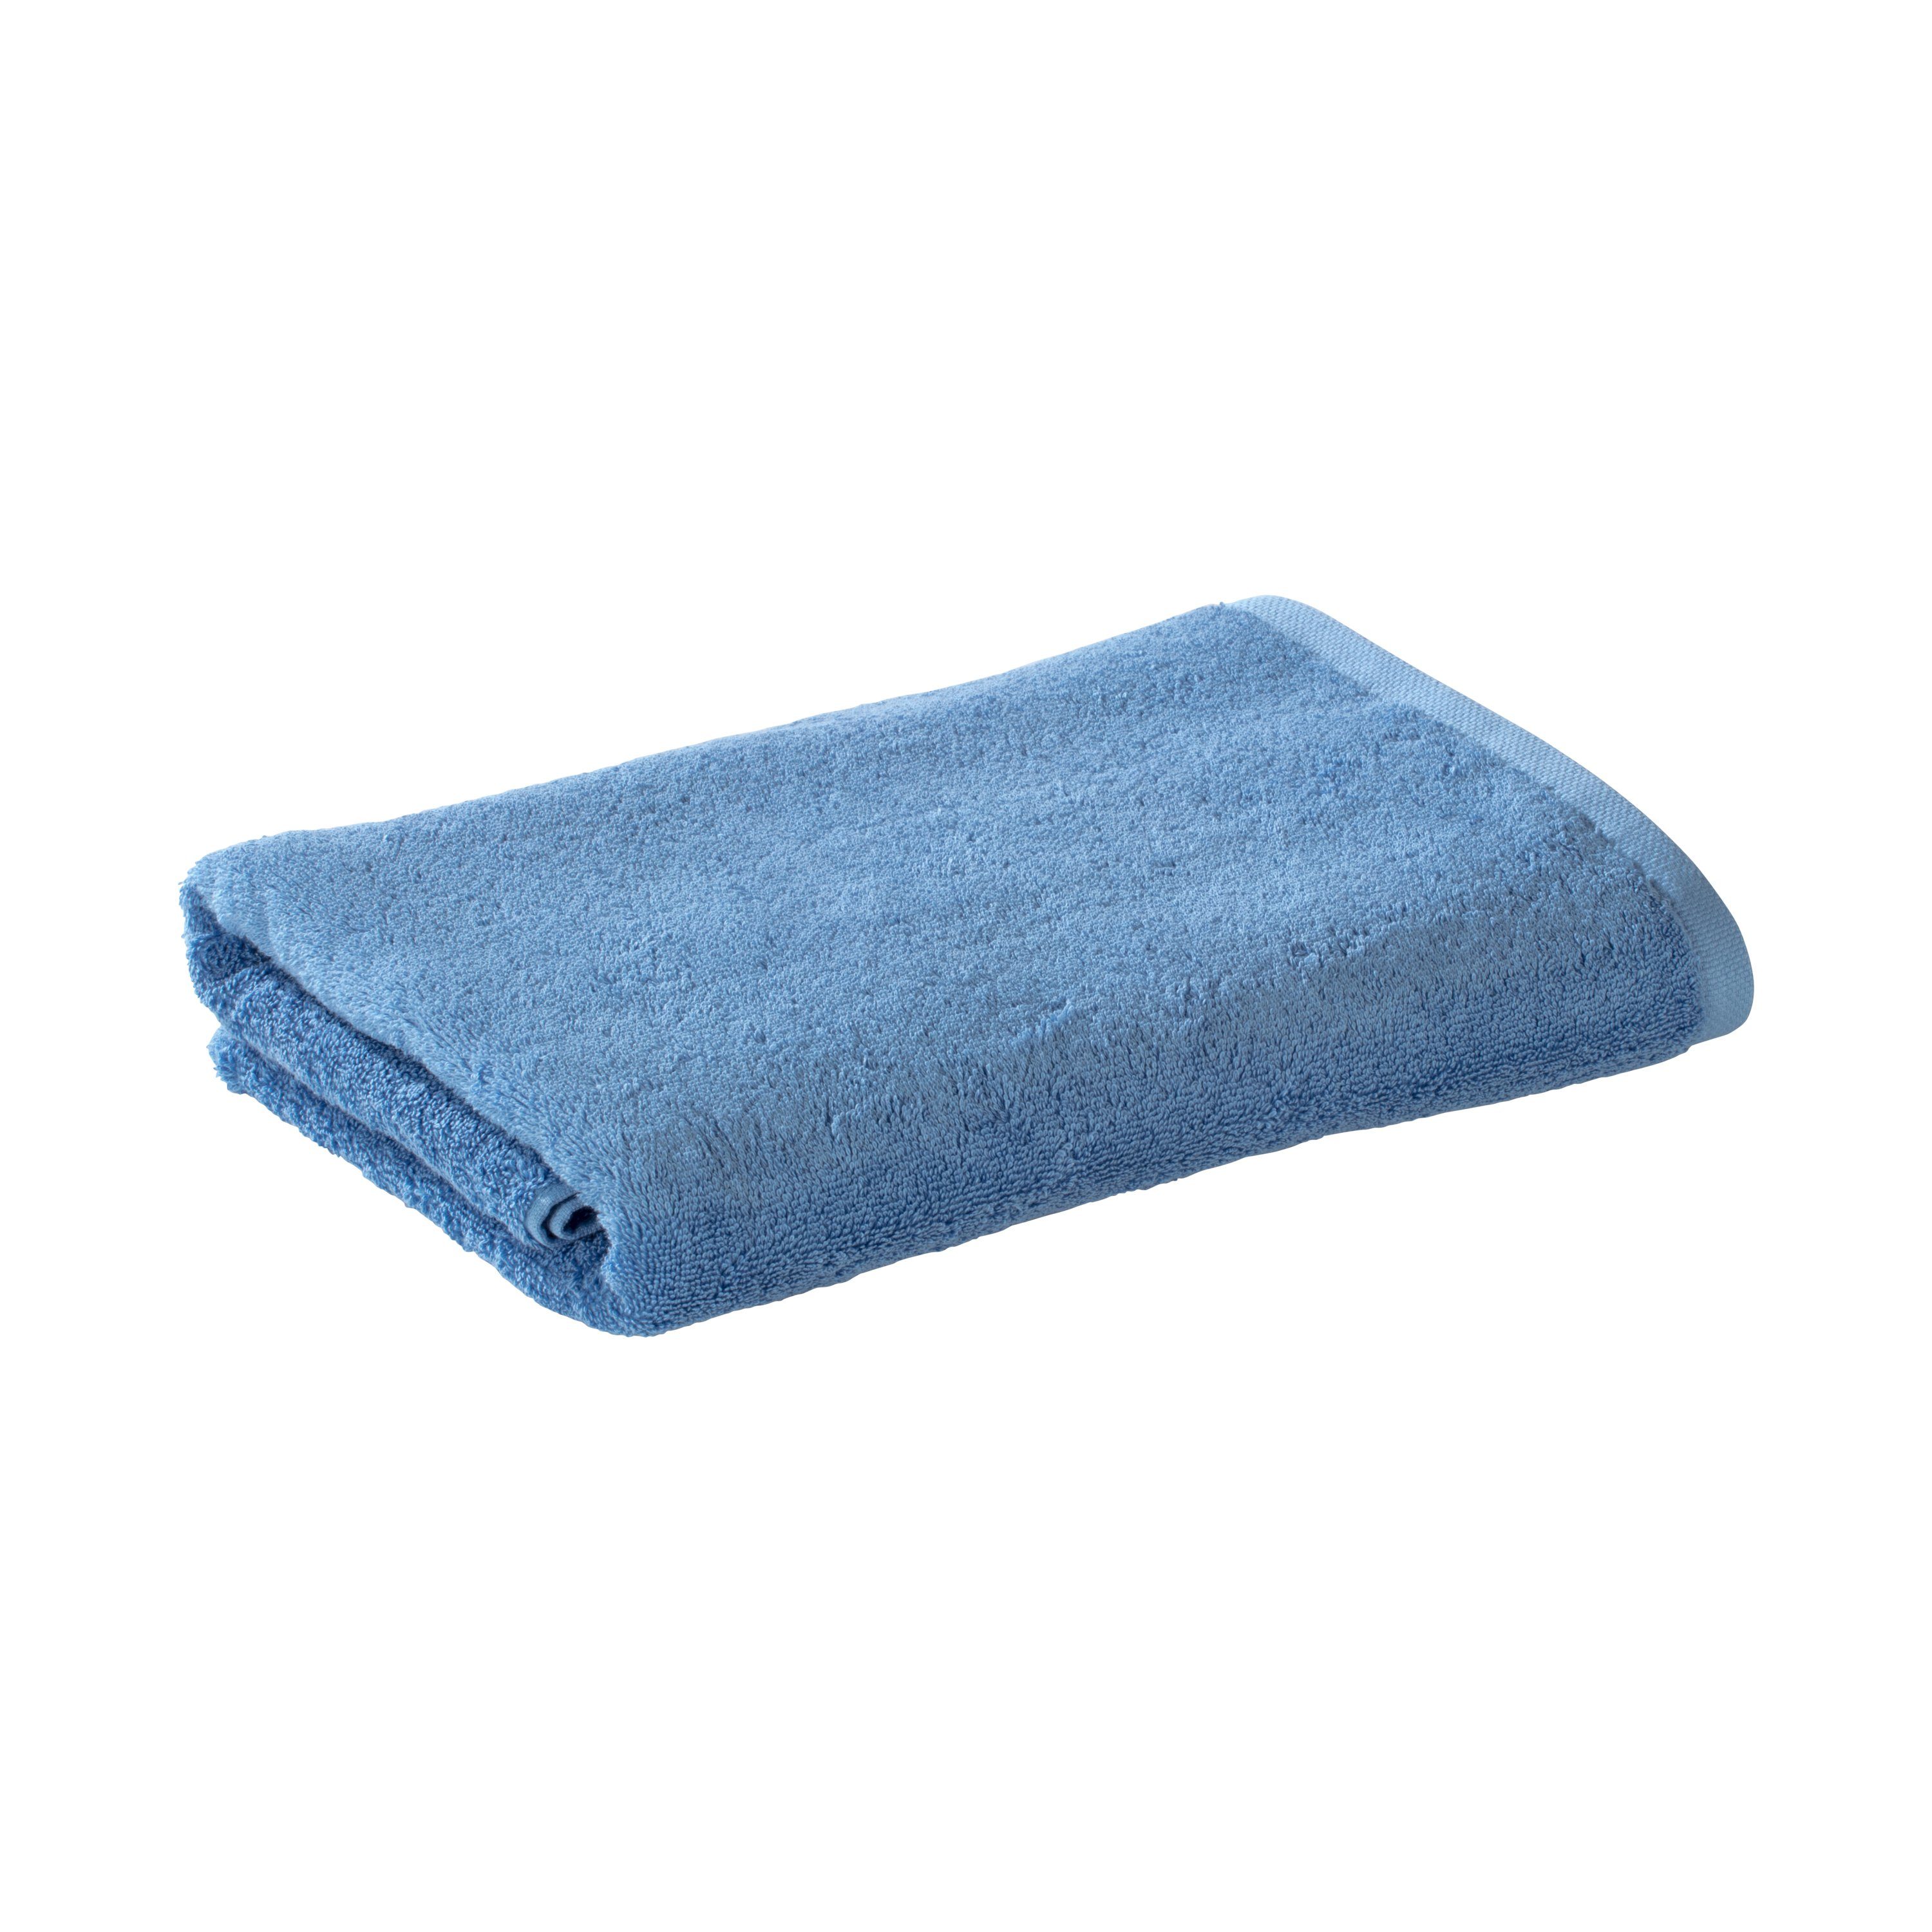 Bomlins Duschtuch Duschtücher aus 100% original ägyptische GIZA Baumwolle 650 g/m², Baumwolle, -> Spüren Sie die Qualität. Hellblau